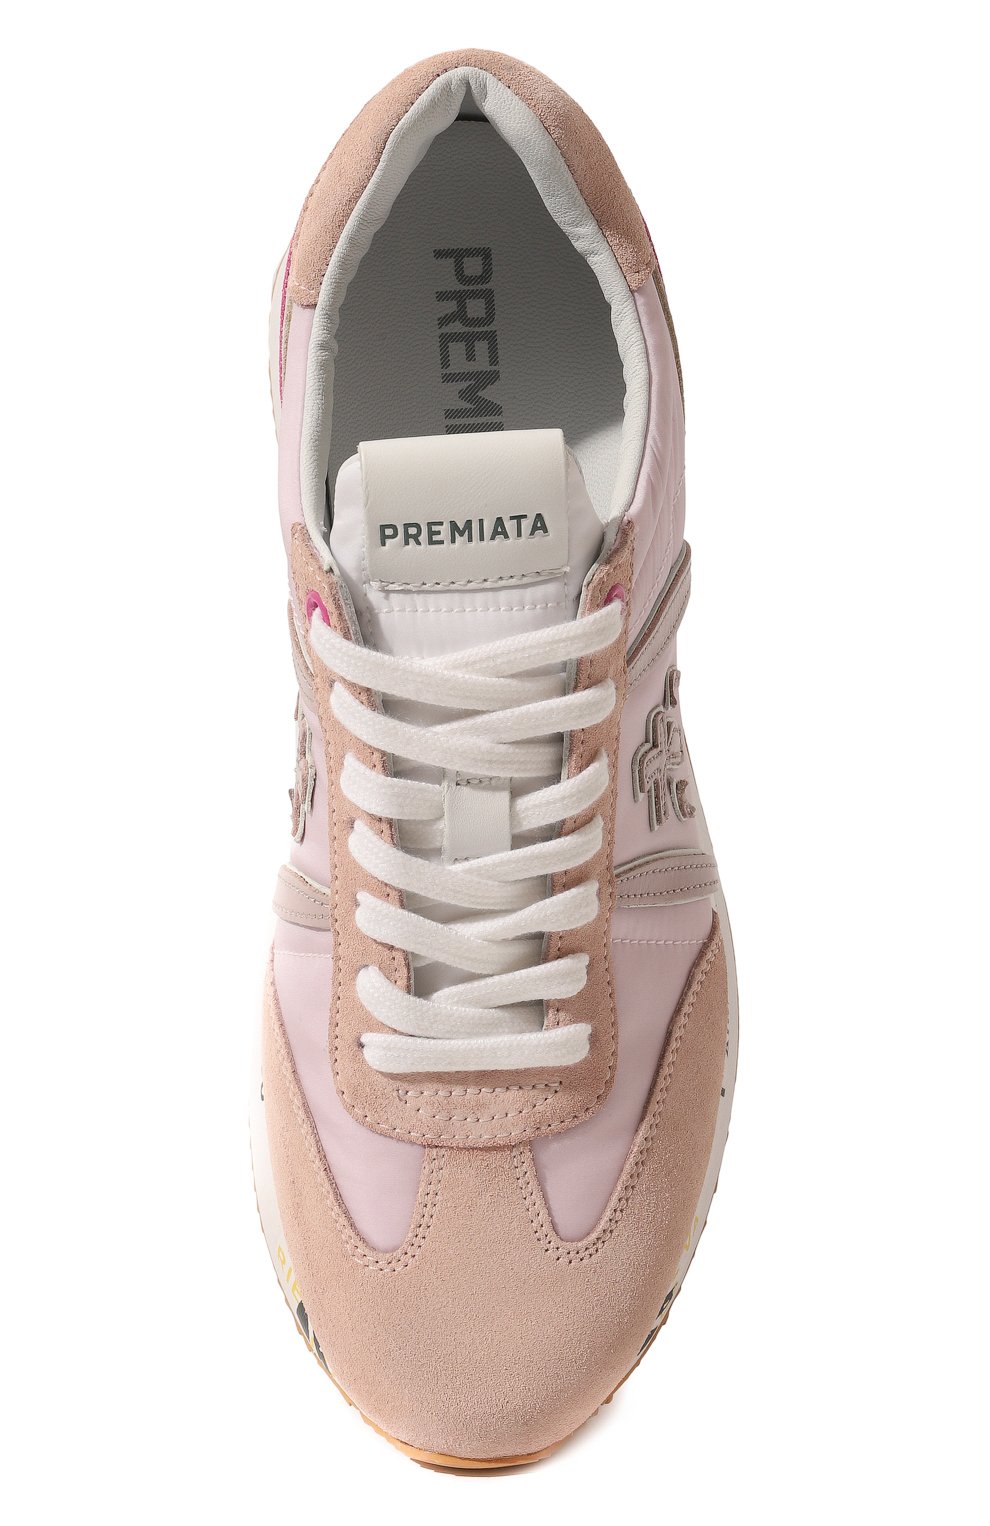 Комбинированные кроссовки Conny Premiata C0NNY/VAR5615, цвет розовый, размер 41 C0NNY/VAR5615 - фото 6